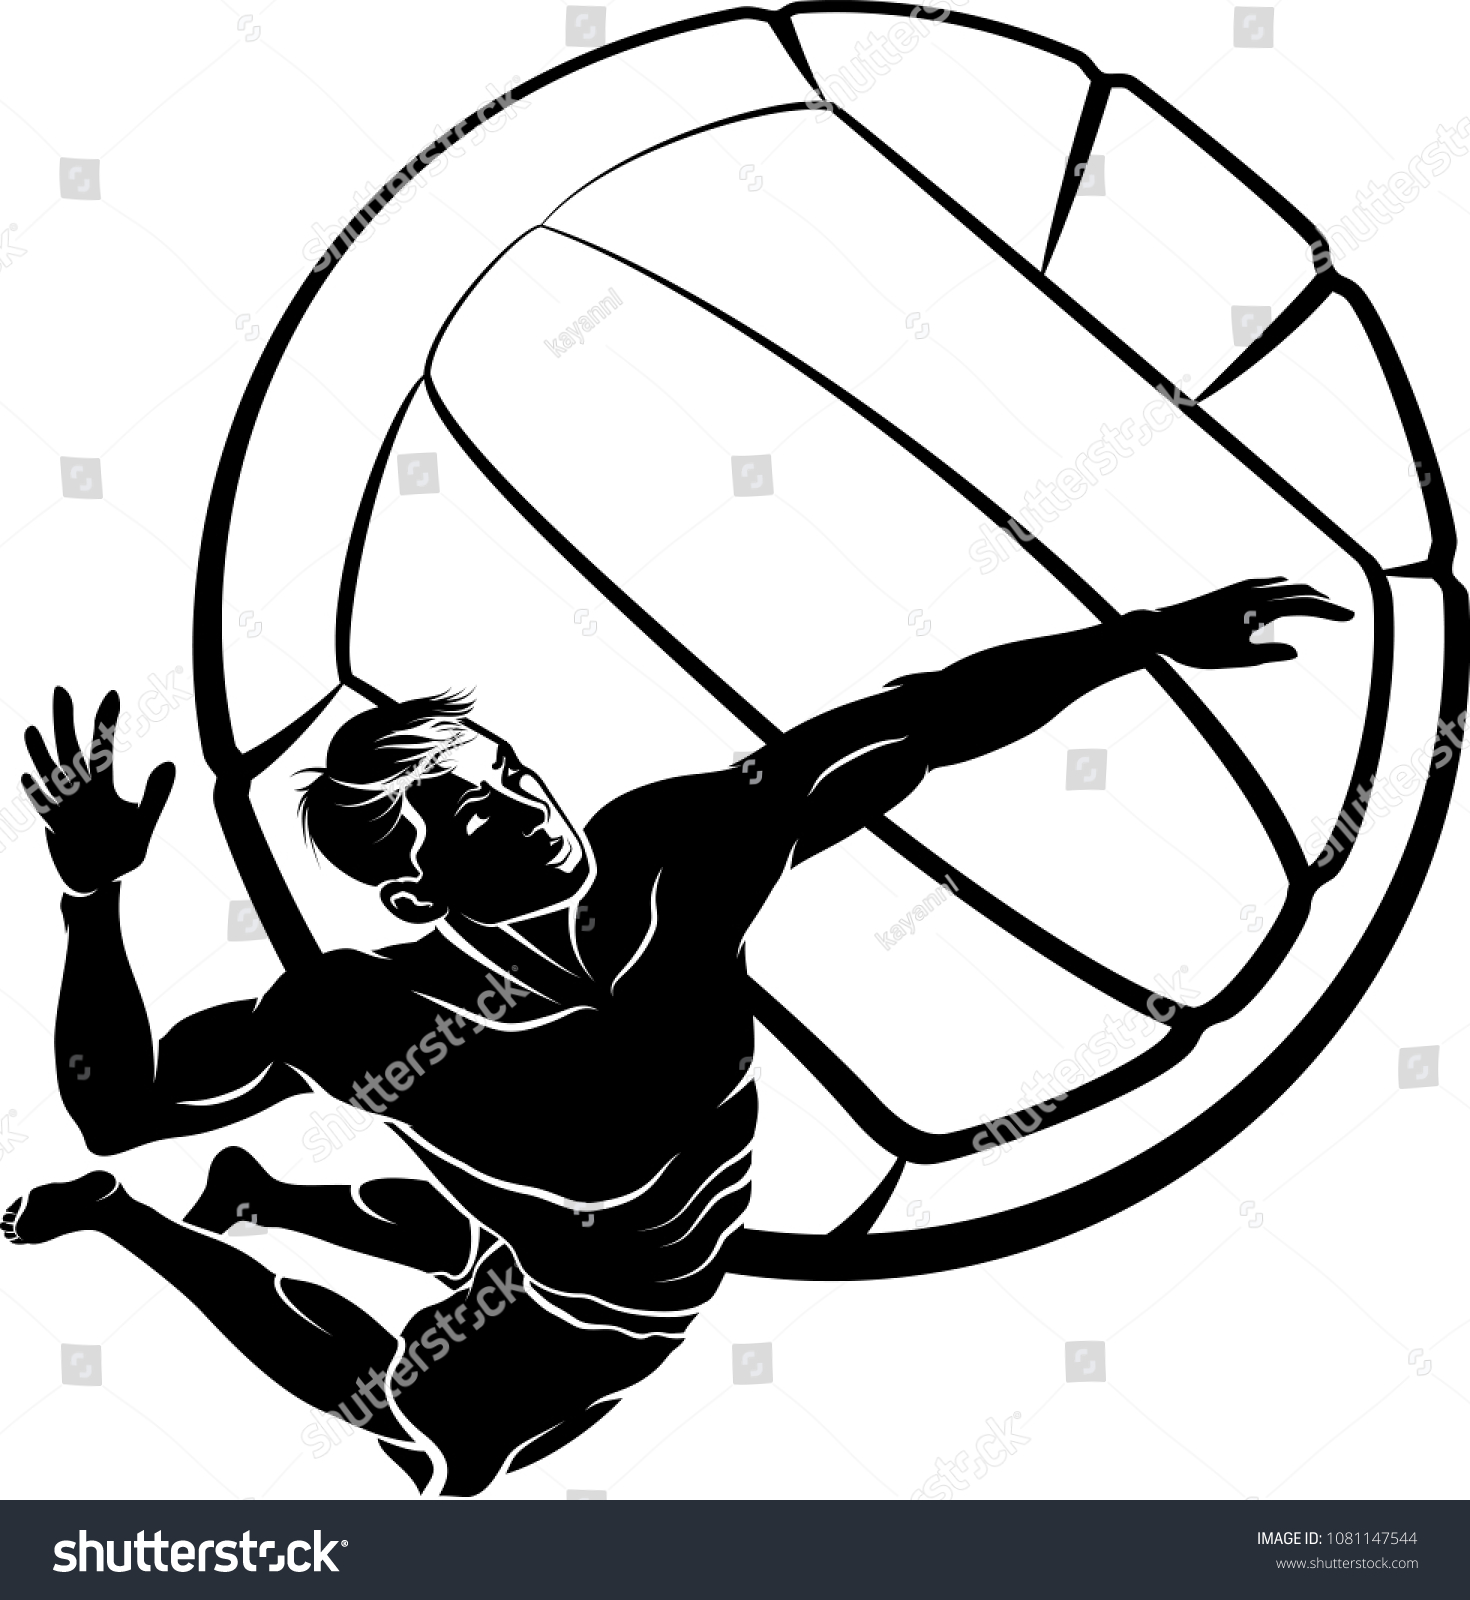 バレーボールの背景にボールを浮かべるビーチバレーボール選手のハイライトされたシルエット のベクター画像素材 ロイヤリティフリー